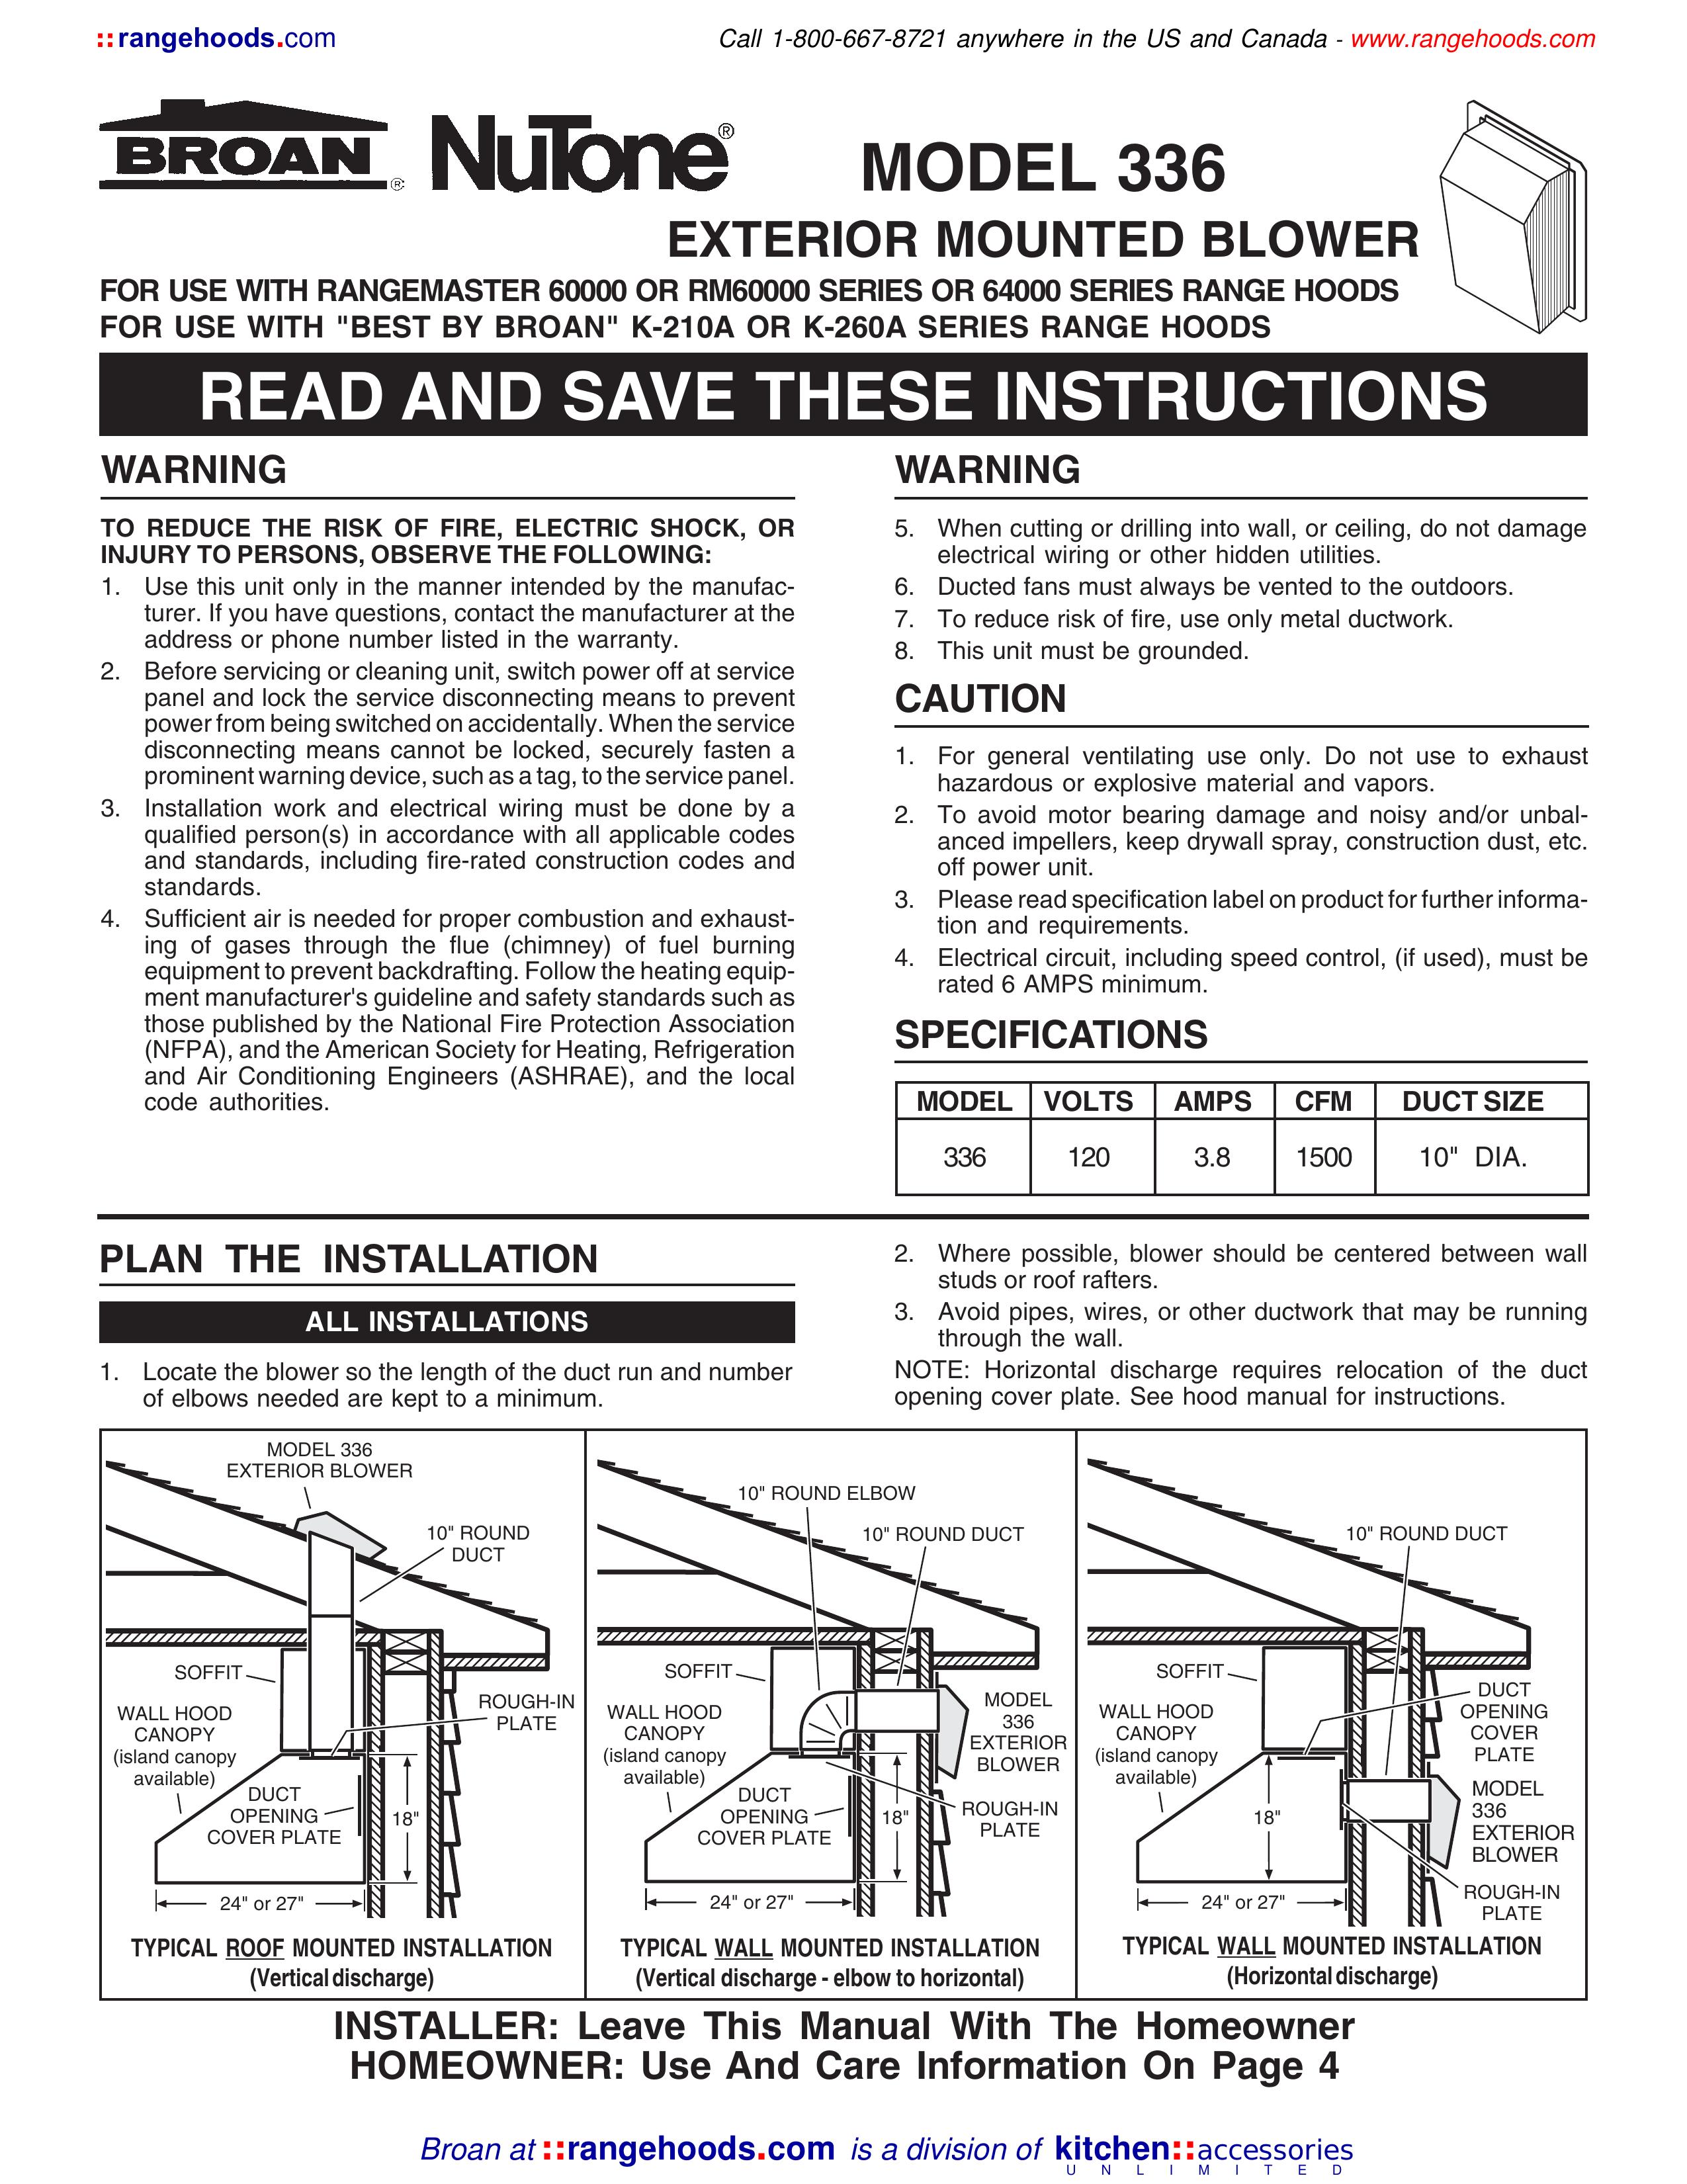 Broan 336 Blower User Manual